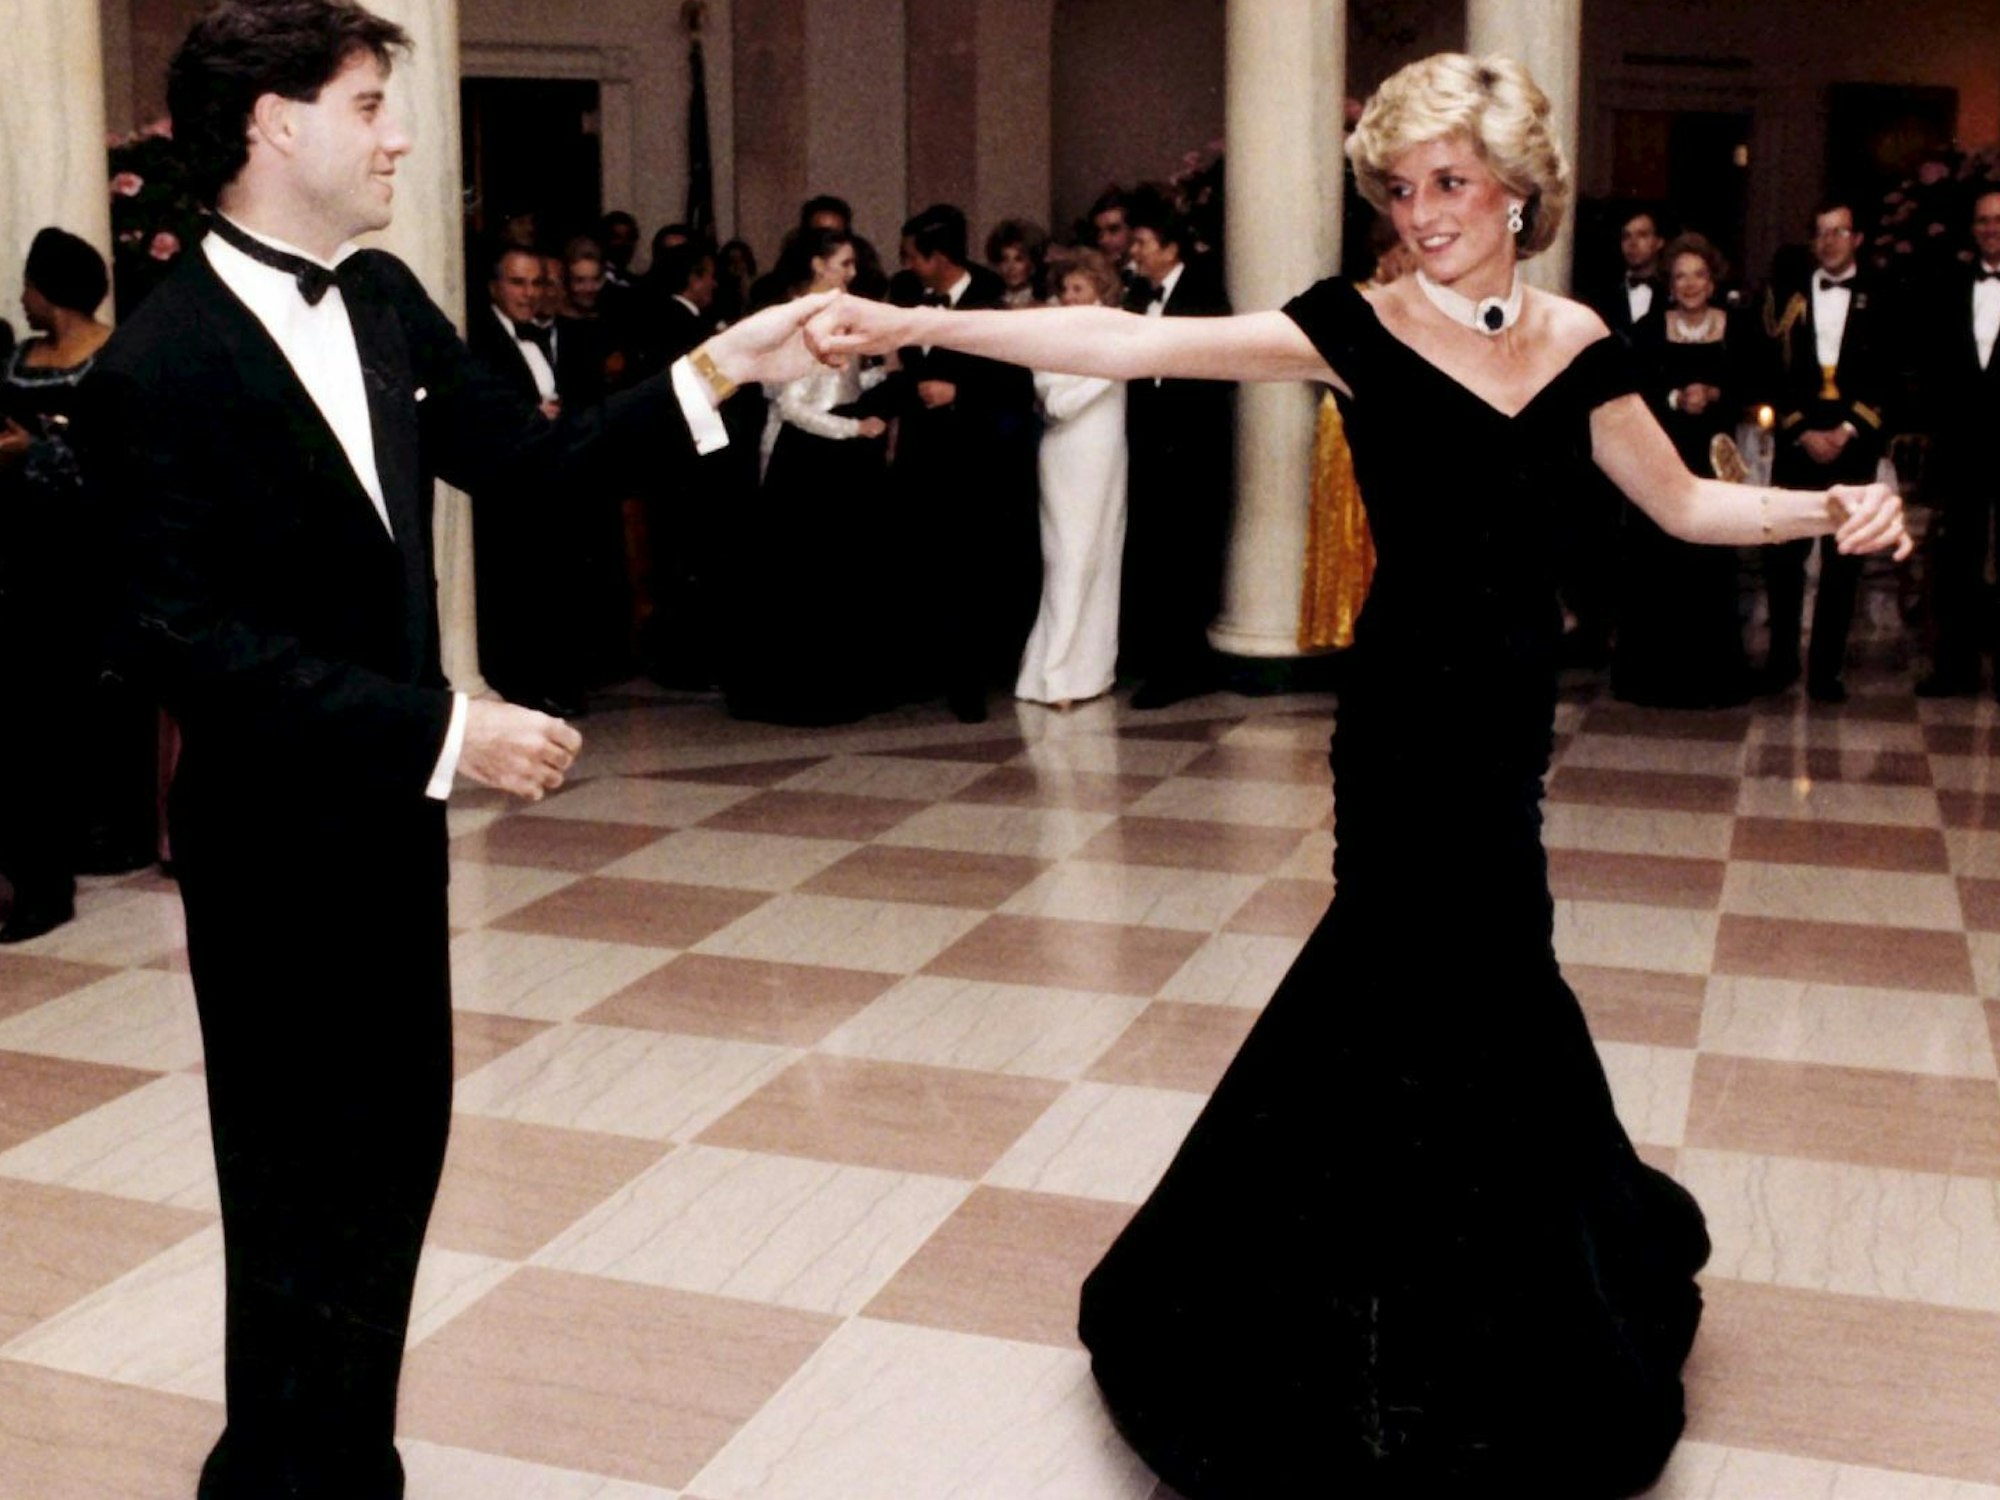 Mit Hollywoodstar John Travolta legt Prinzessin Diana 1985 im Weißen Haus eine flotte Sohle aufs Parkett.